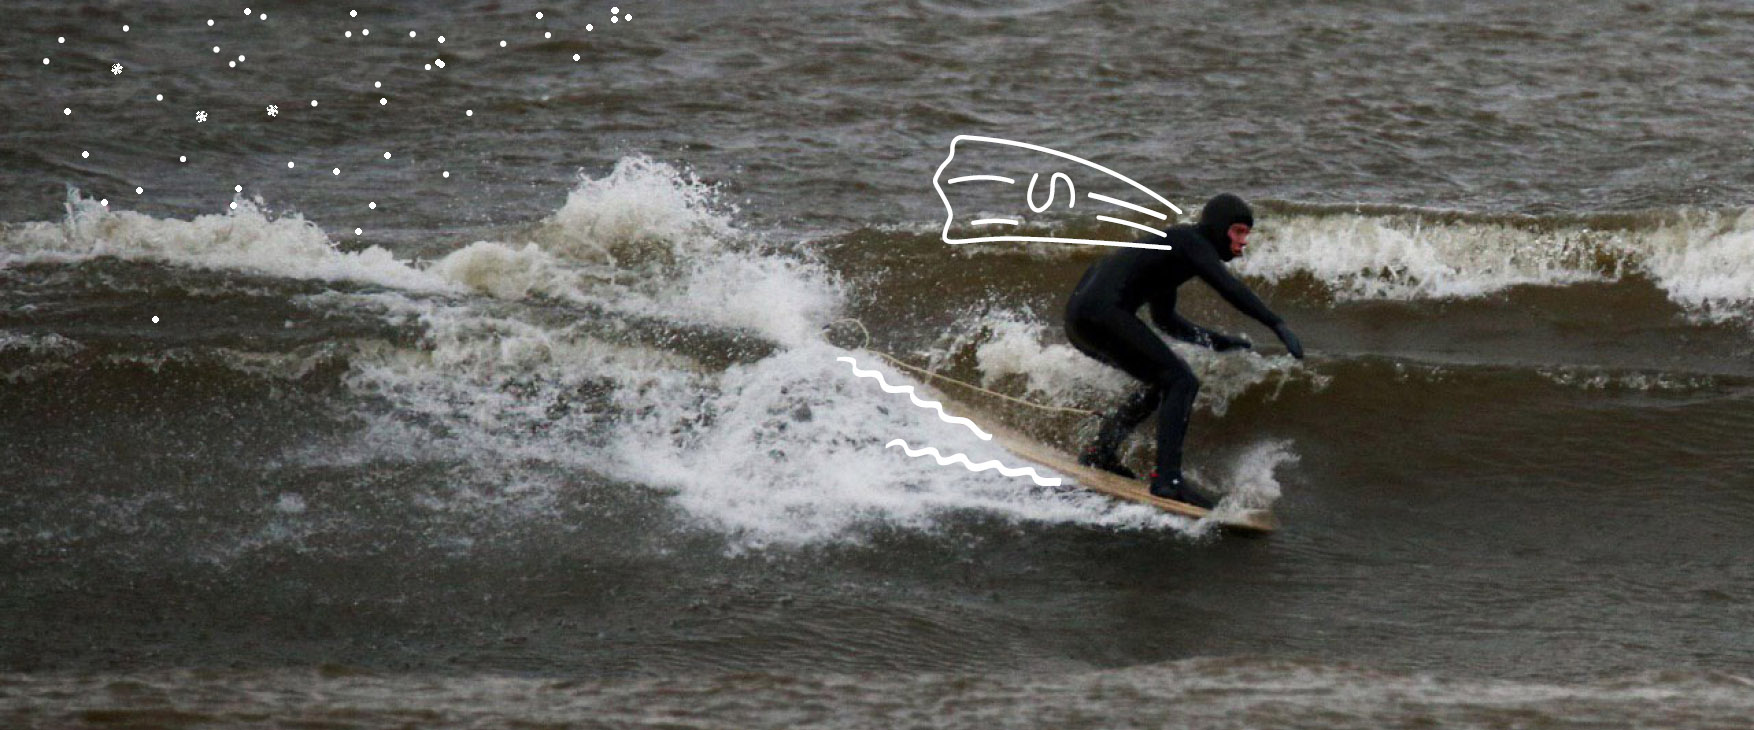 Полноразмерная обложка поста на тему: «Главный плюс — нет людей в воде».<br> Как проходит зимний серфинг на Ладоге